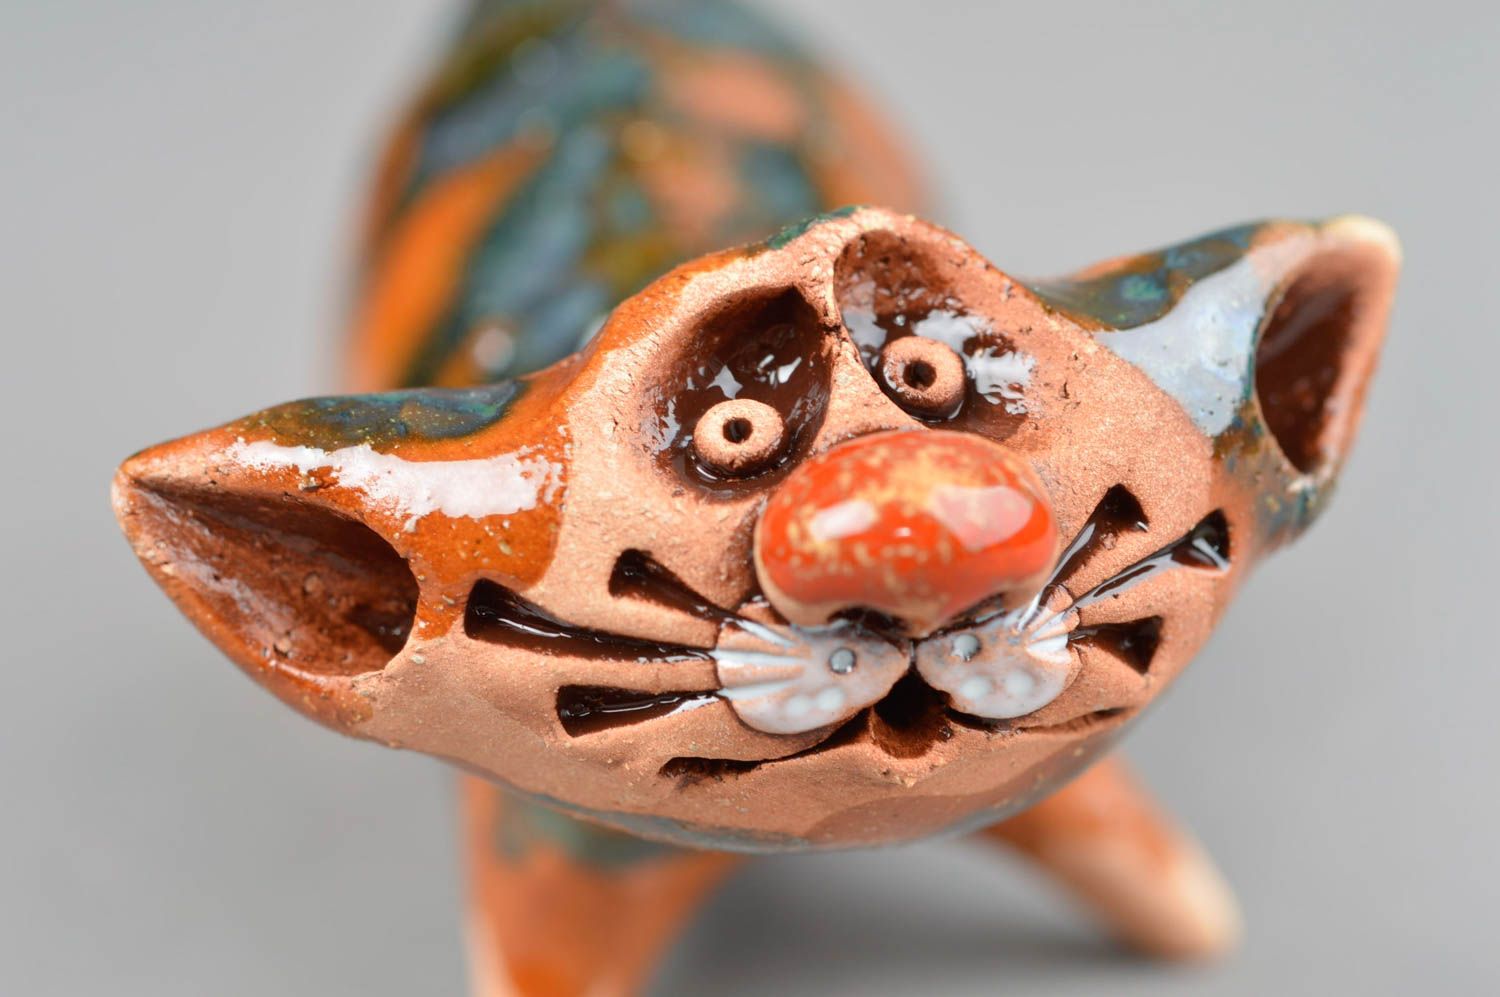 Handmade ceramic figurines ceramic animals cat decor gift ideas for women photo 5